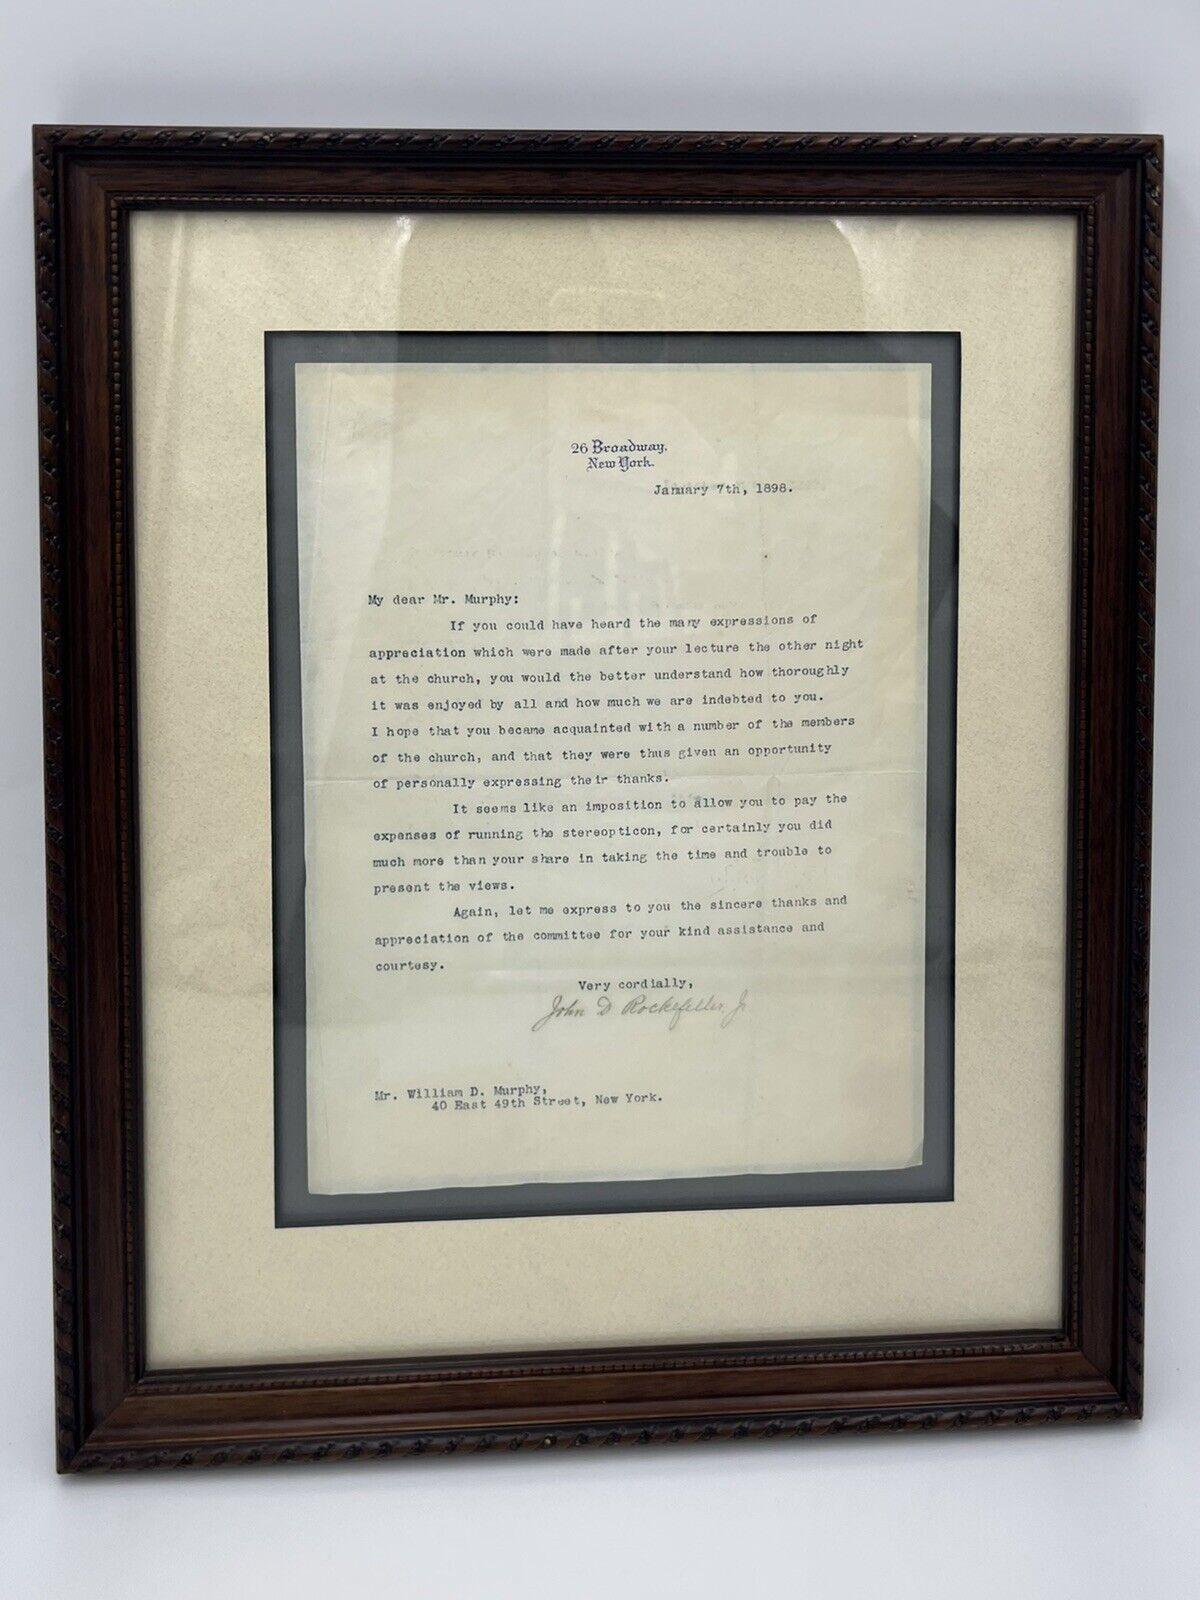 John D. Rockefeller JR. (Amerikaner, 1839-1937), um 1898. Ein interessanter Brief von John Rockefeller JR an William D. Murphy, der sich auf einen Vortrag aus dem Jahr 1898 bezieht. Handsigniert und mit seinem Briefkopf 26 Broadway, New York.